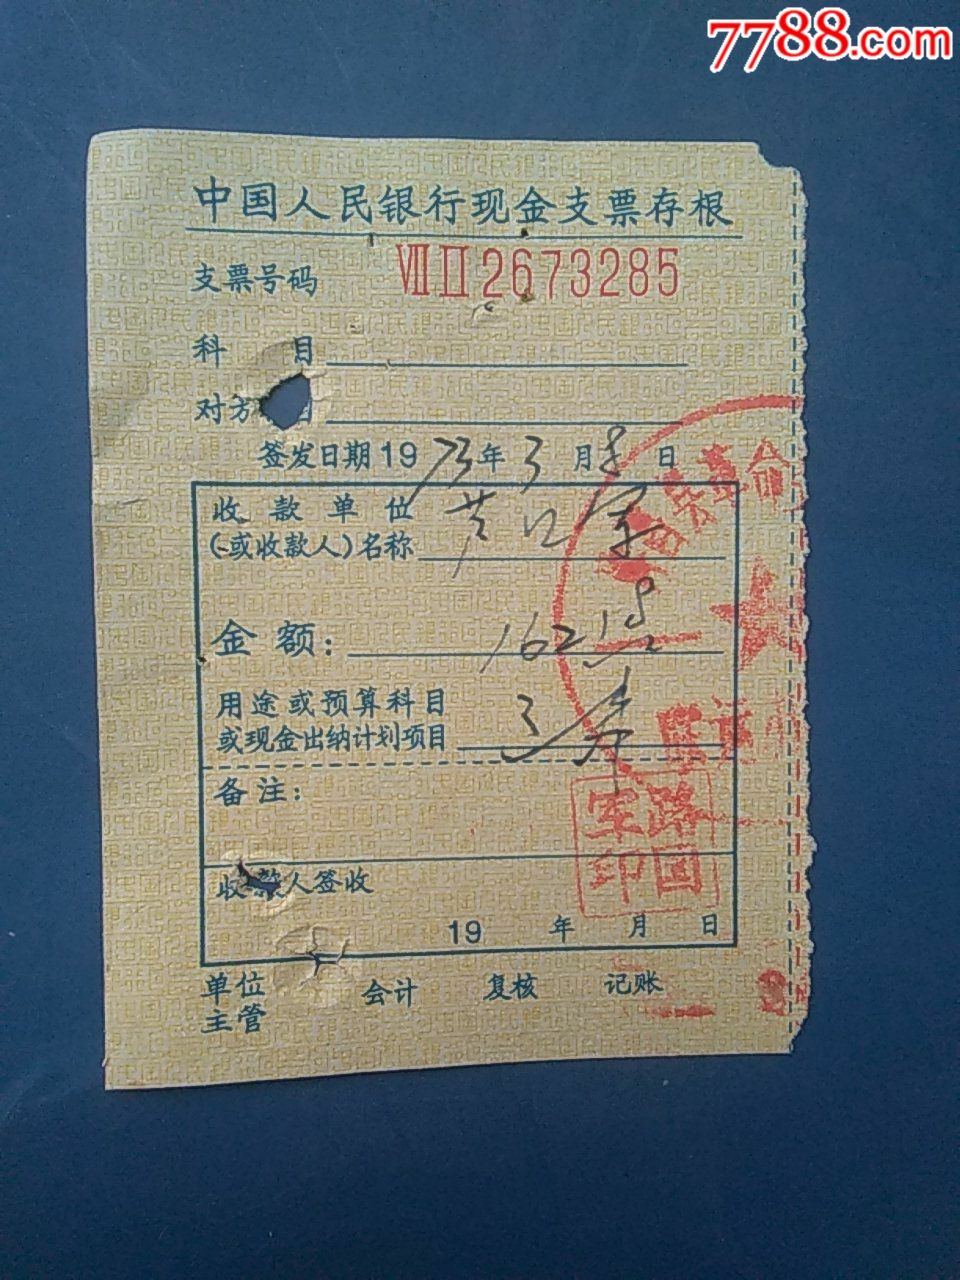 中国人民银行现金支票存根197338